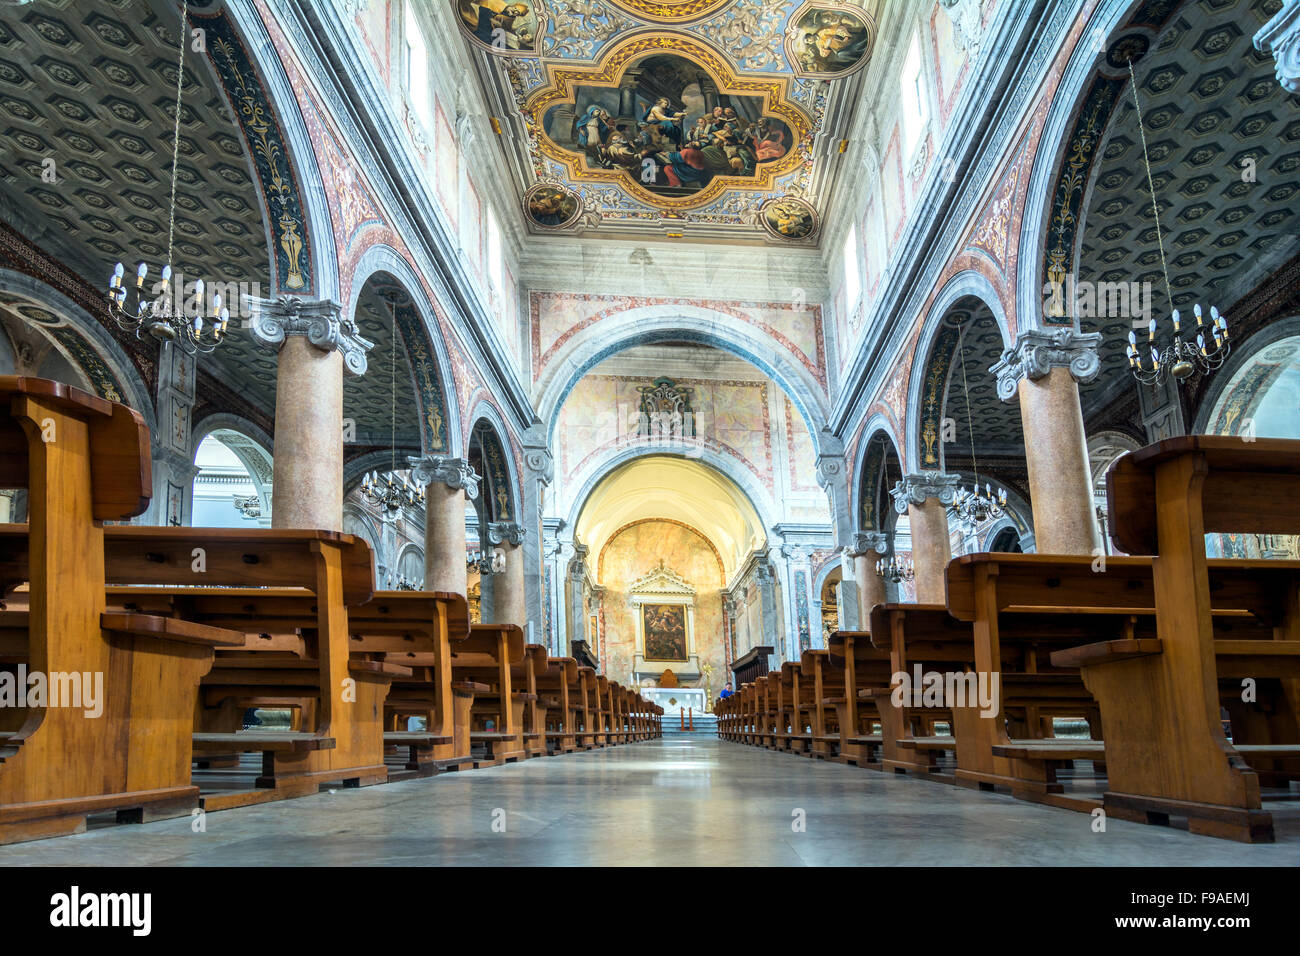 Jour de l'intérieur de la cathédrale d'Ostuni, Italie. Banque D'Images